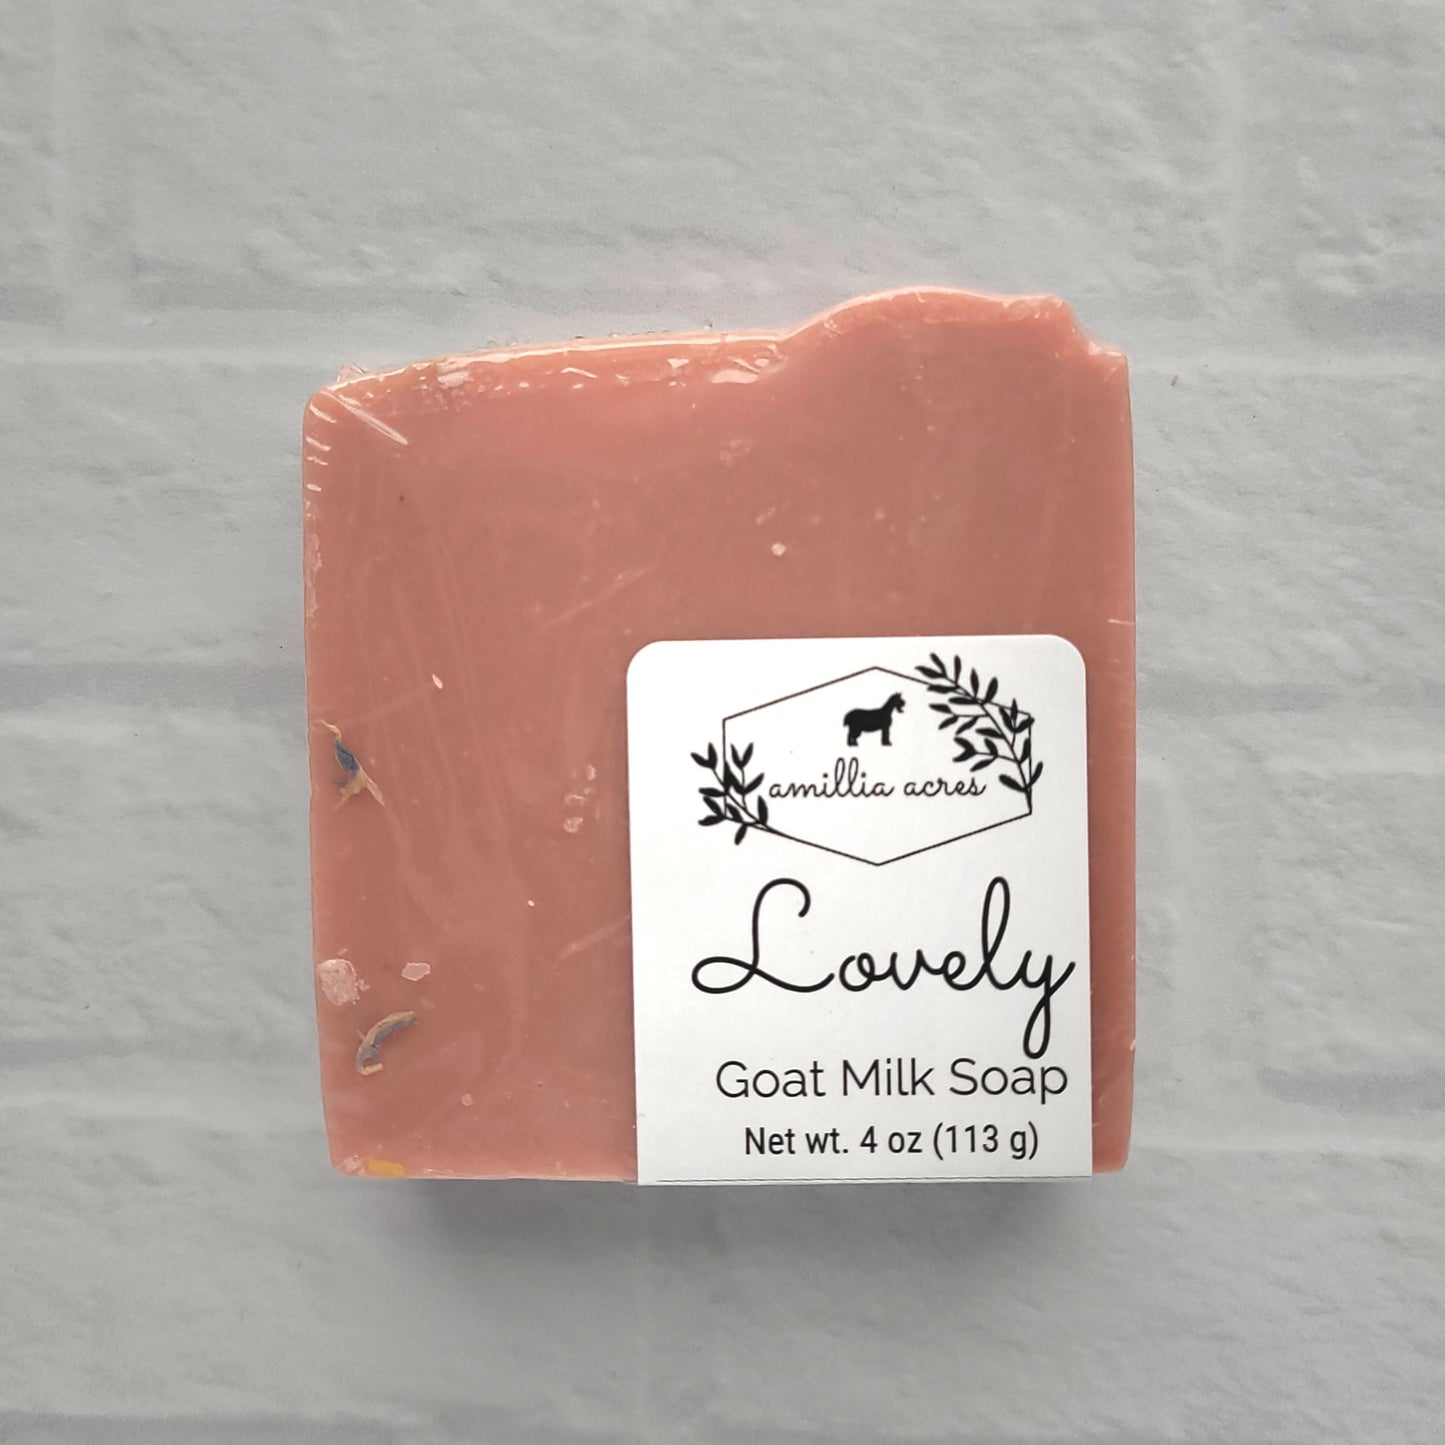 Lovely Goat Milk Soap